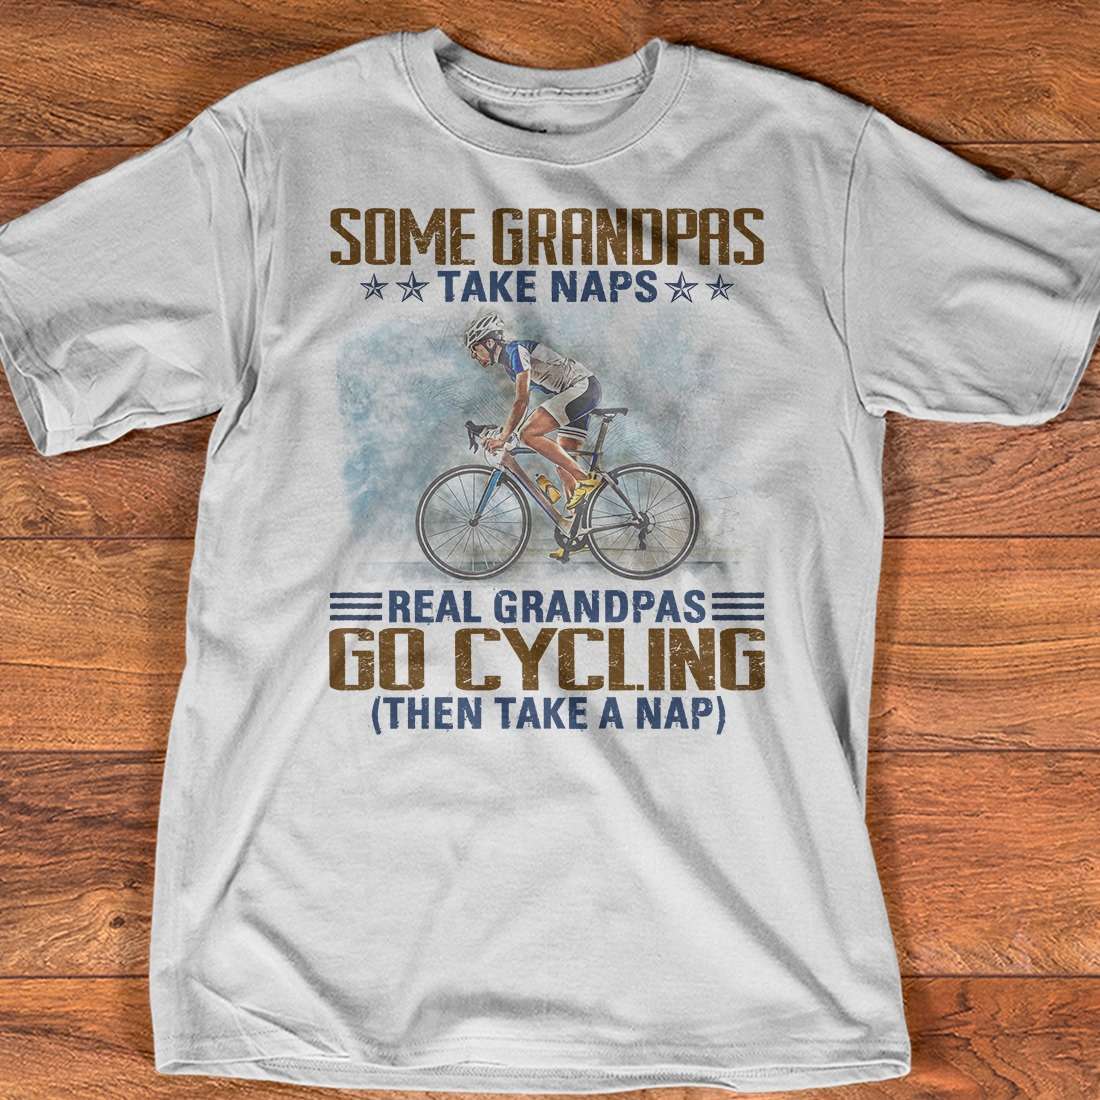 Some grandpas take naps real grandpas go cycling then take a nap - Grandpa the biker